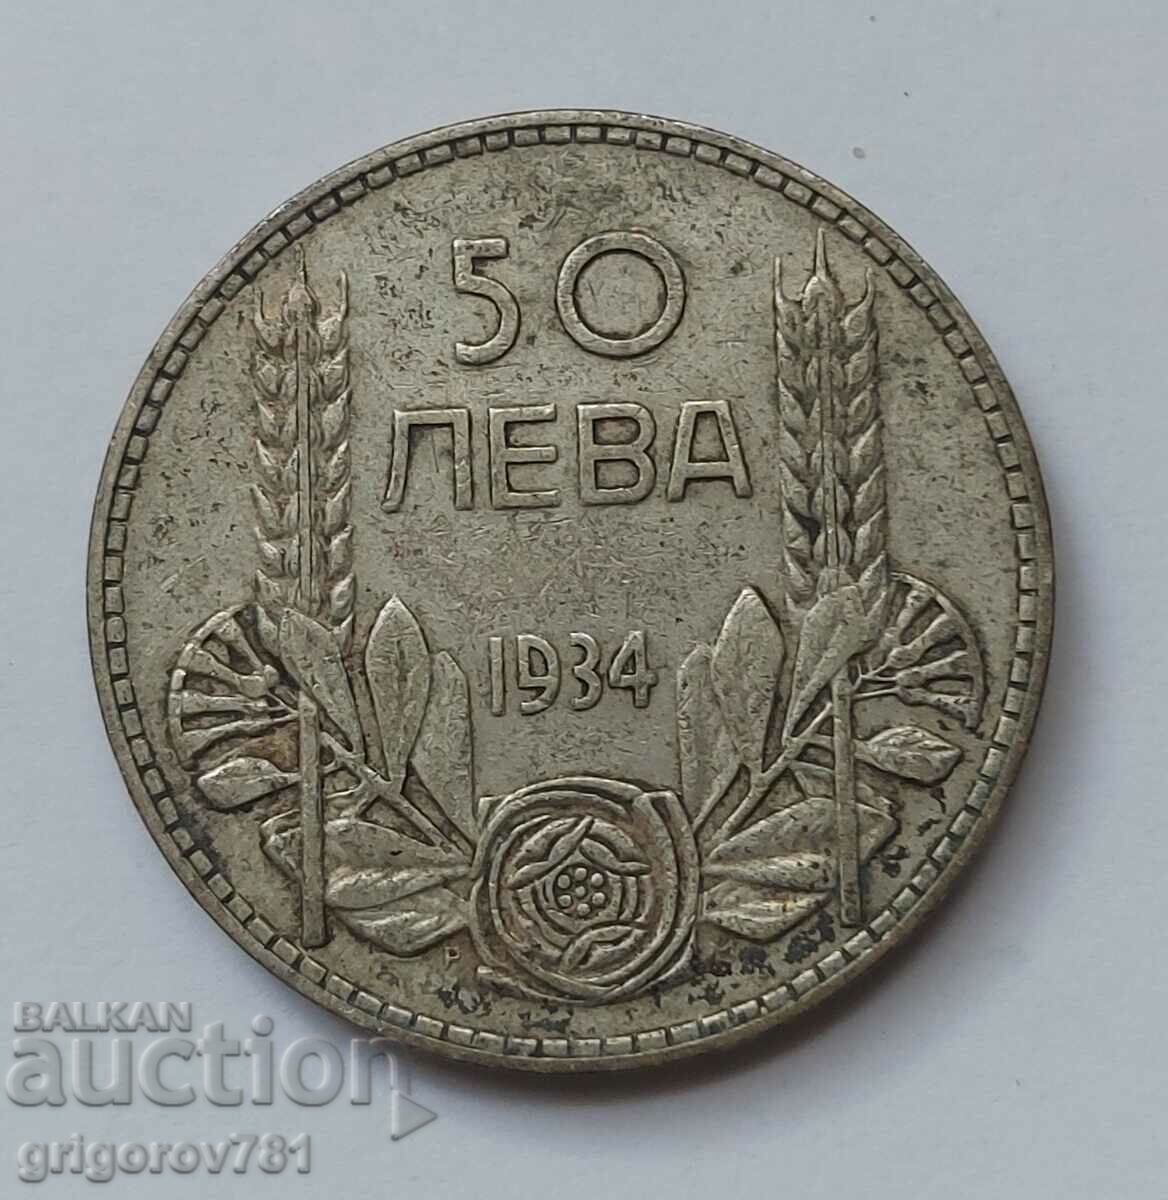 Ασήμι 50 λέβα Βουλγαρία 1934 - ασημένιο νόμισμα #1